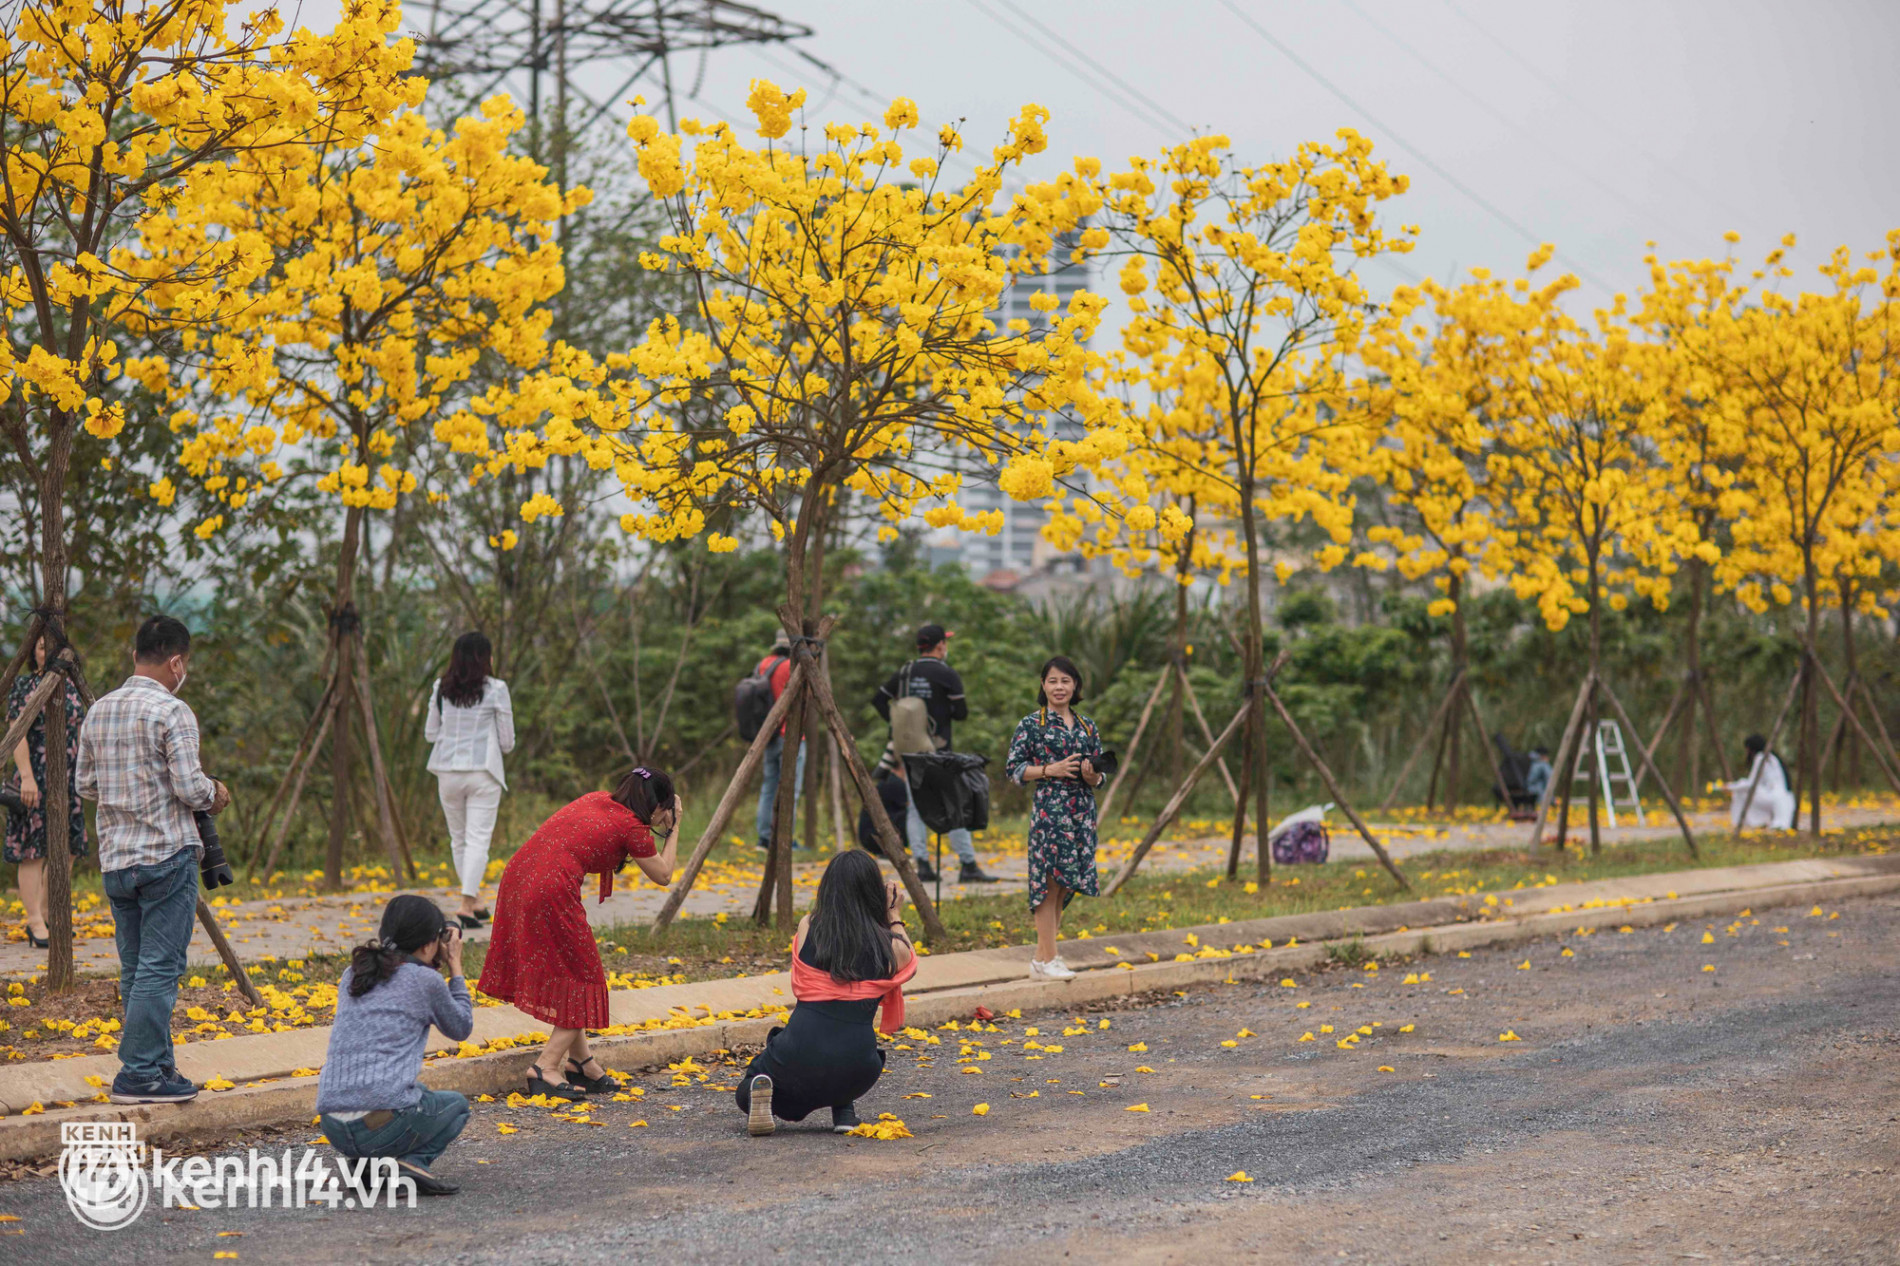 Con đường hoa vàng ở Hà Nội mới nổi 2 ngày đã đông nghịt người kéo đến check-in, có cả ekip “sống ảo” hùng hậu - Ảnh 11.